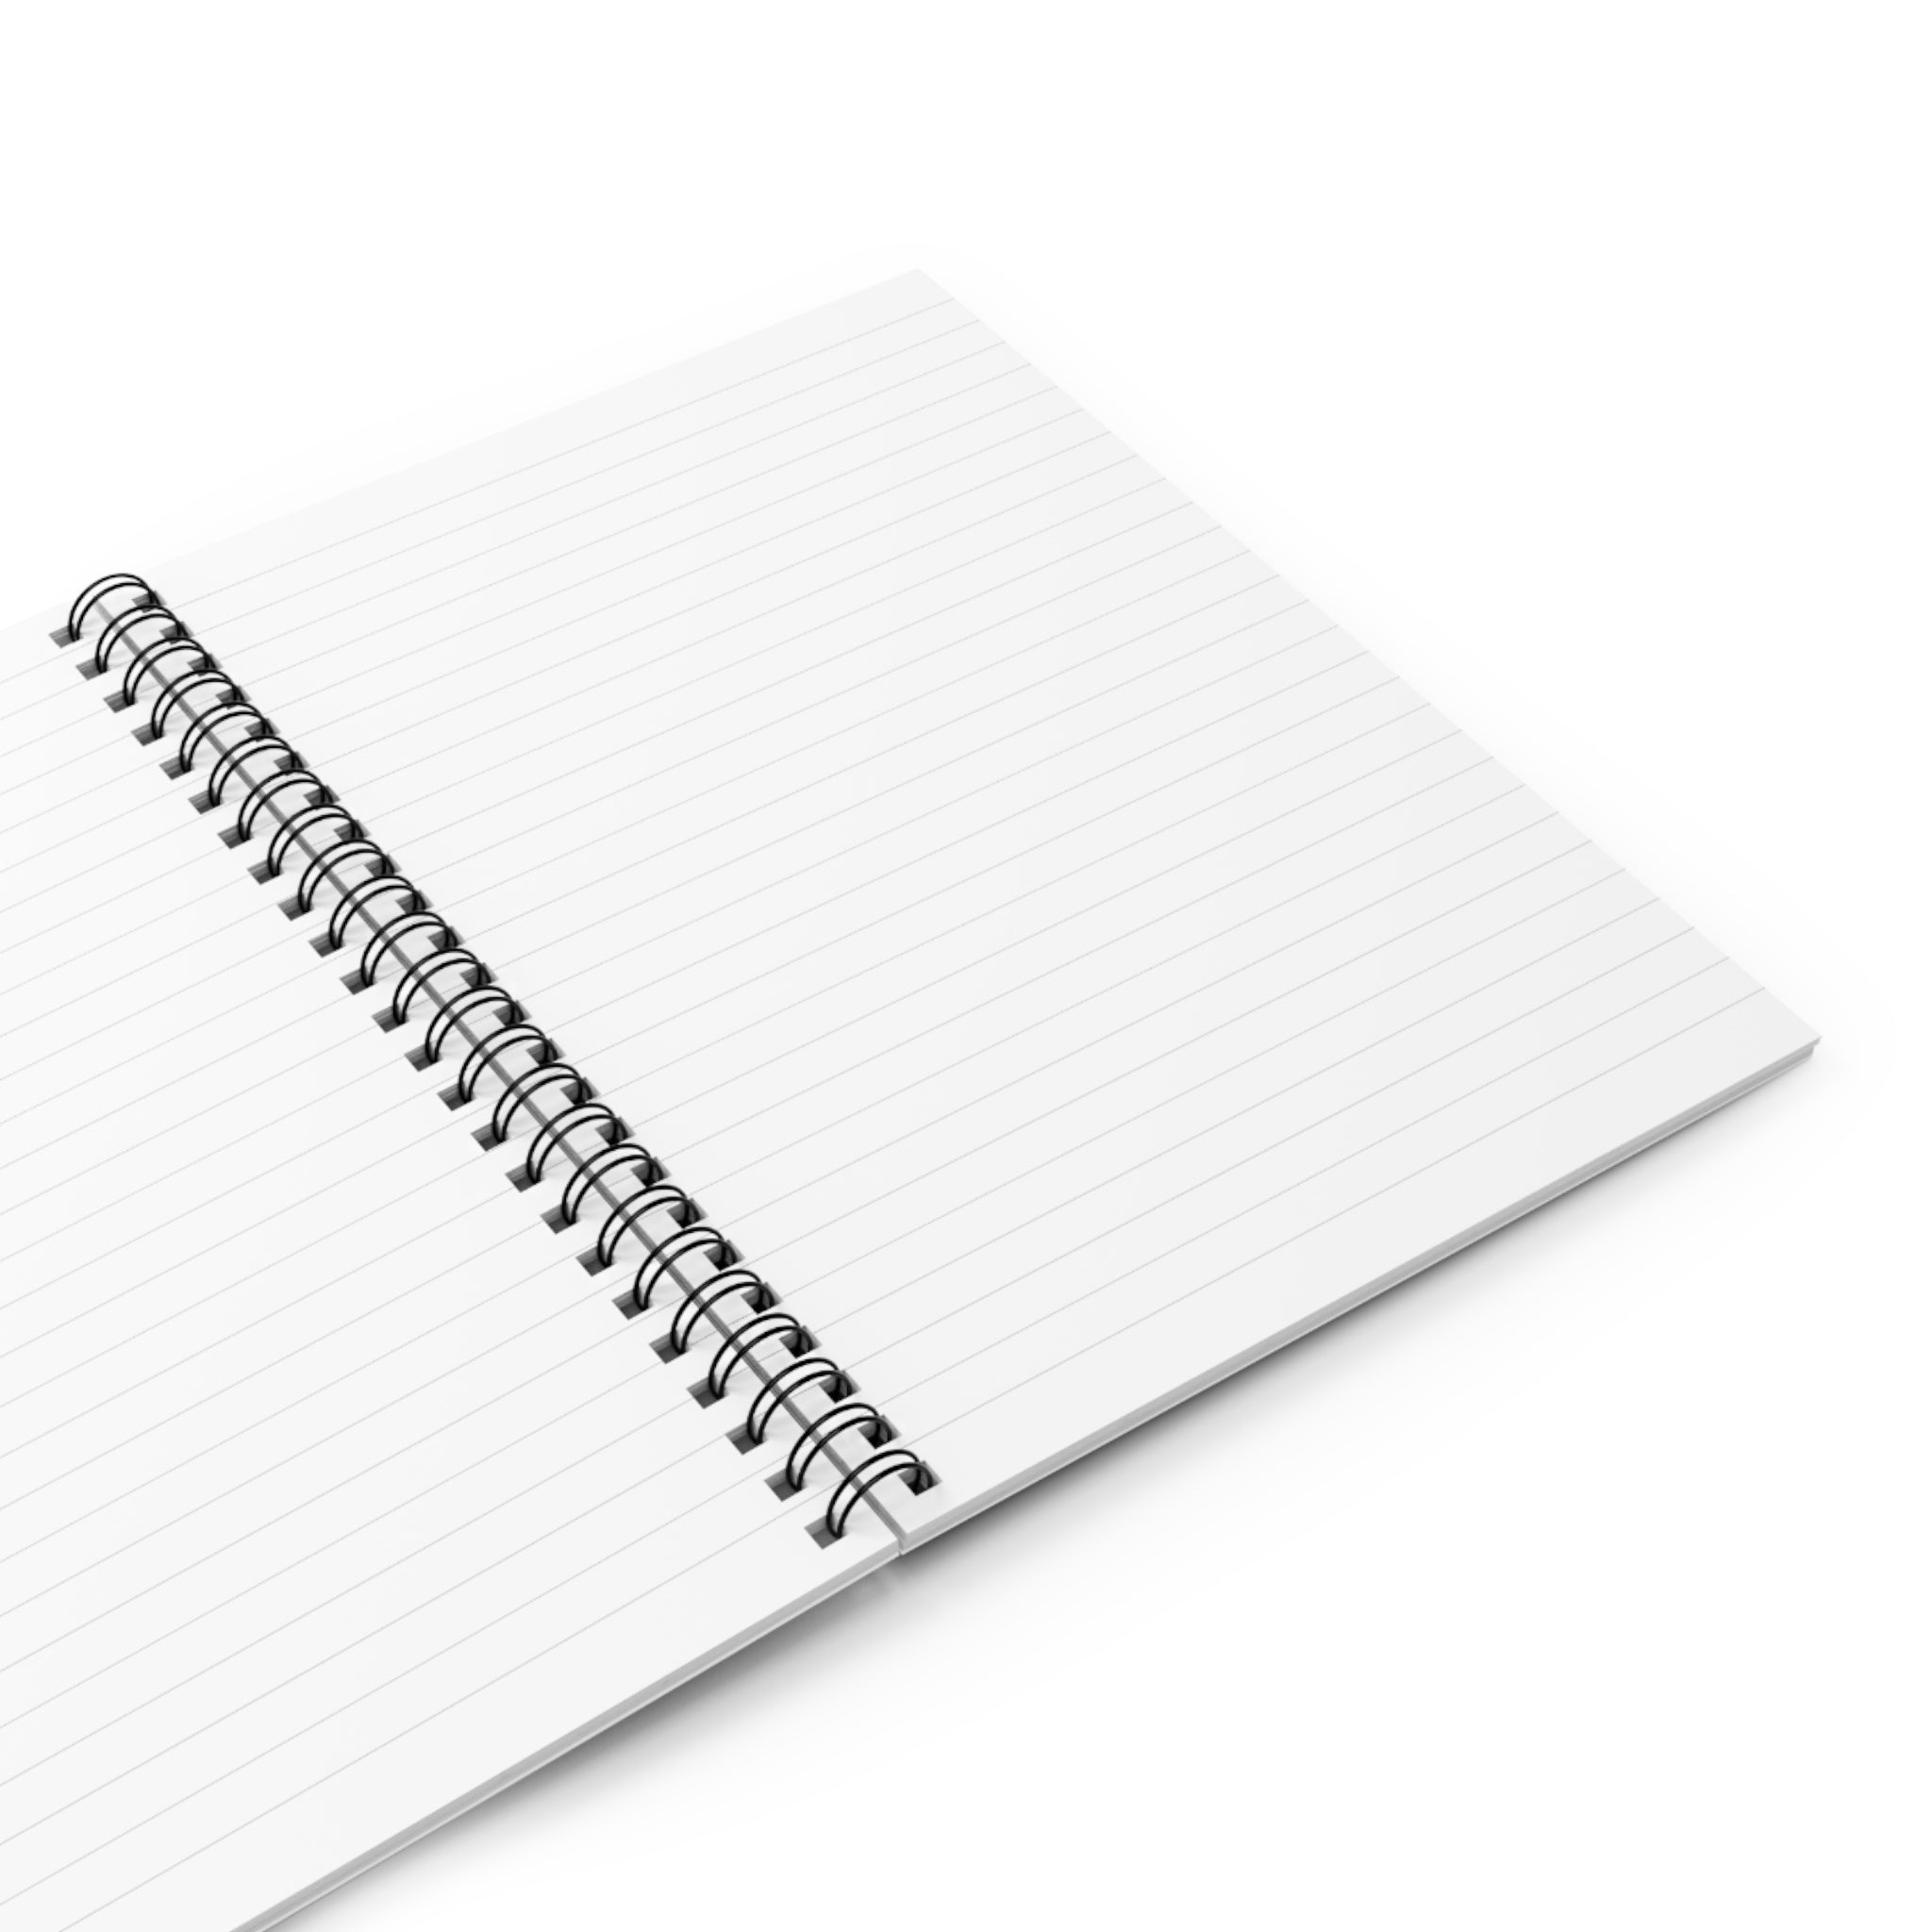 Hecklecult Spiral Notebook - Ruled Line